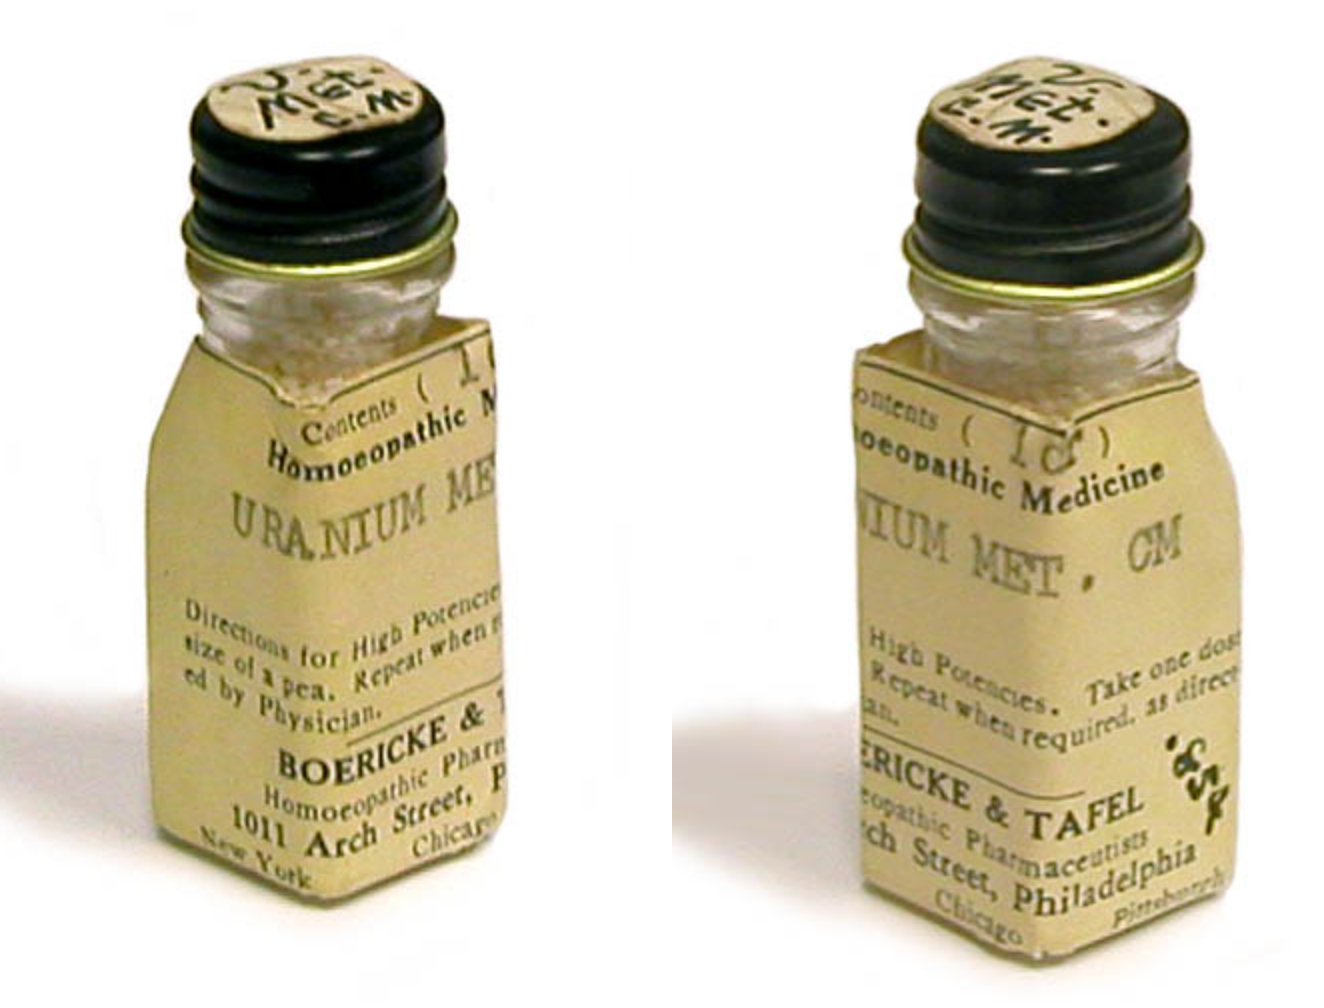 Uranium Homeopathic Medicine